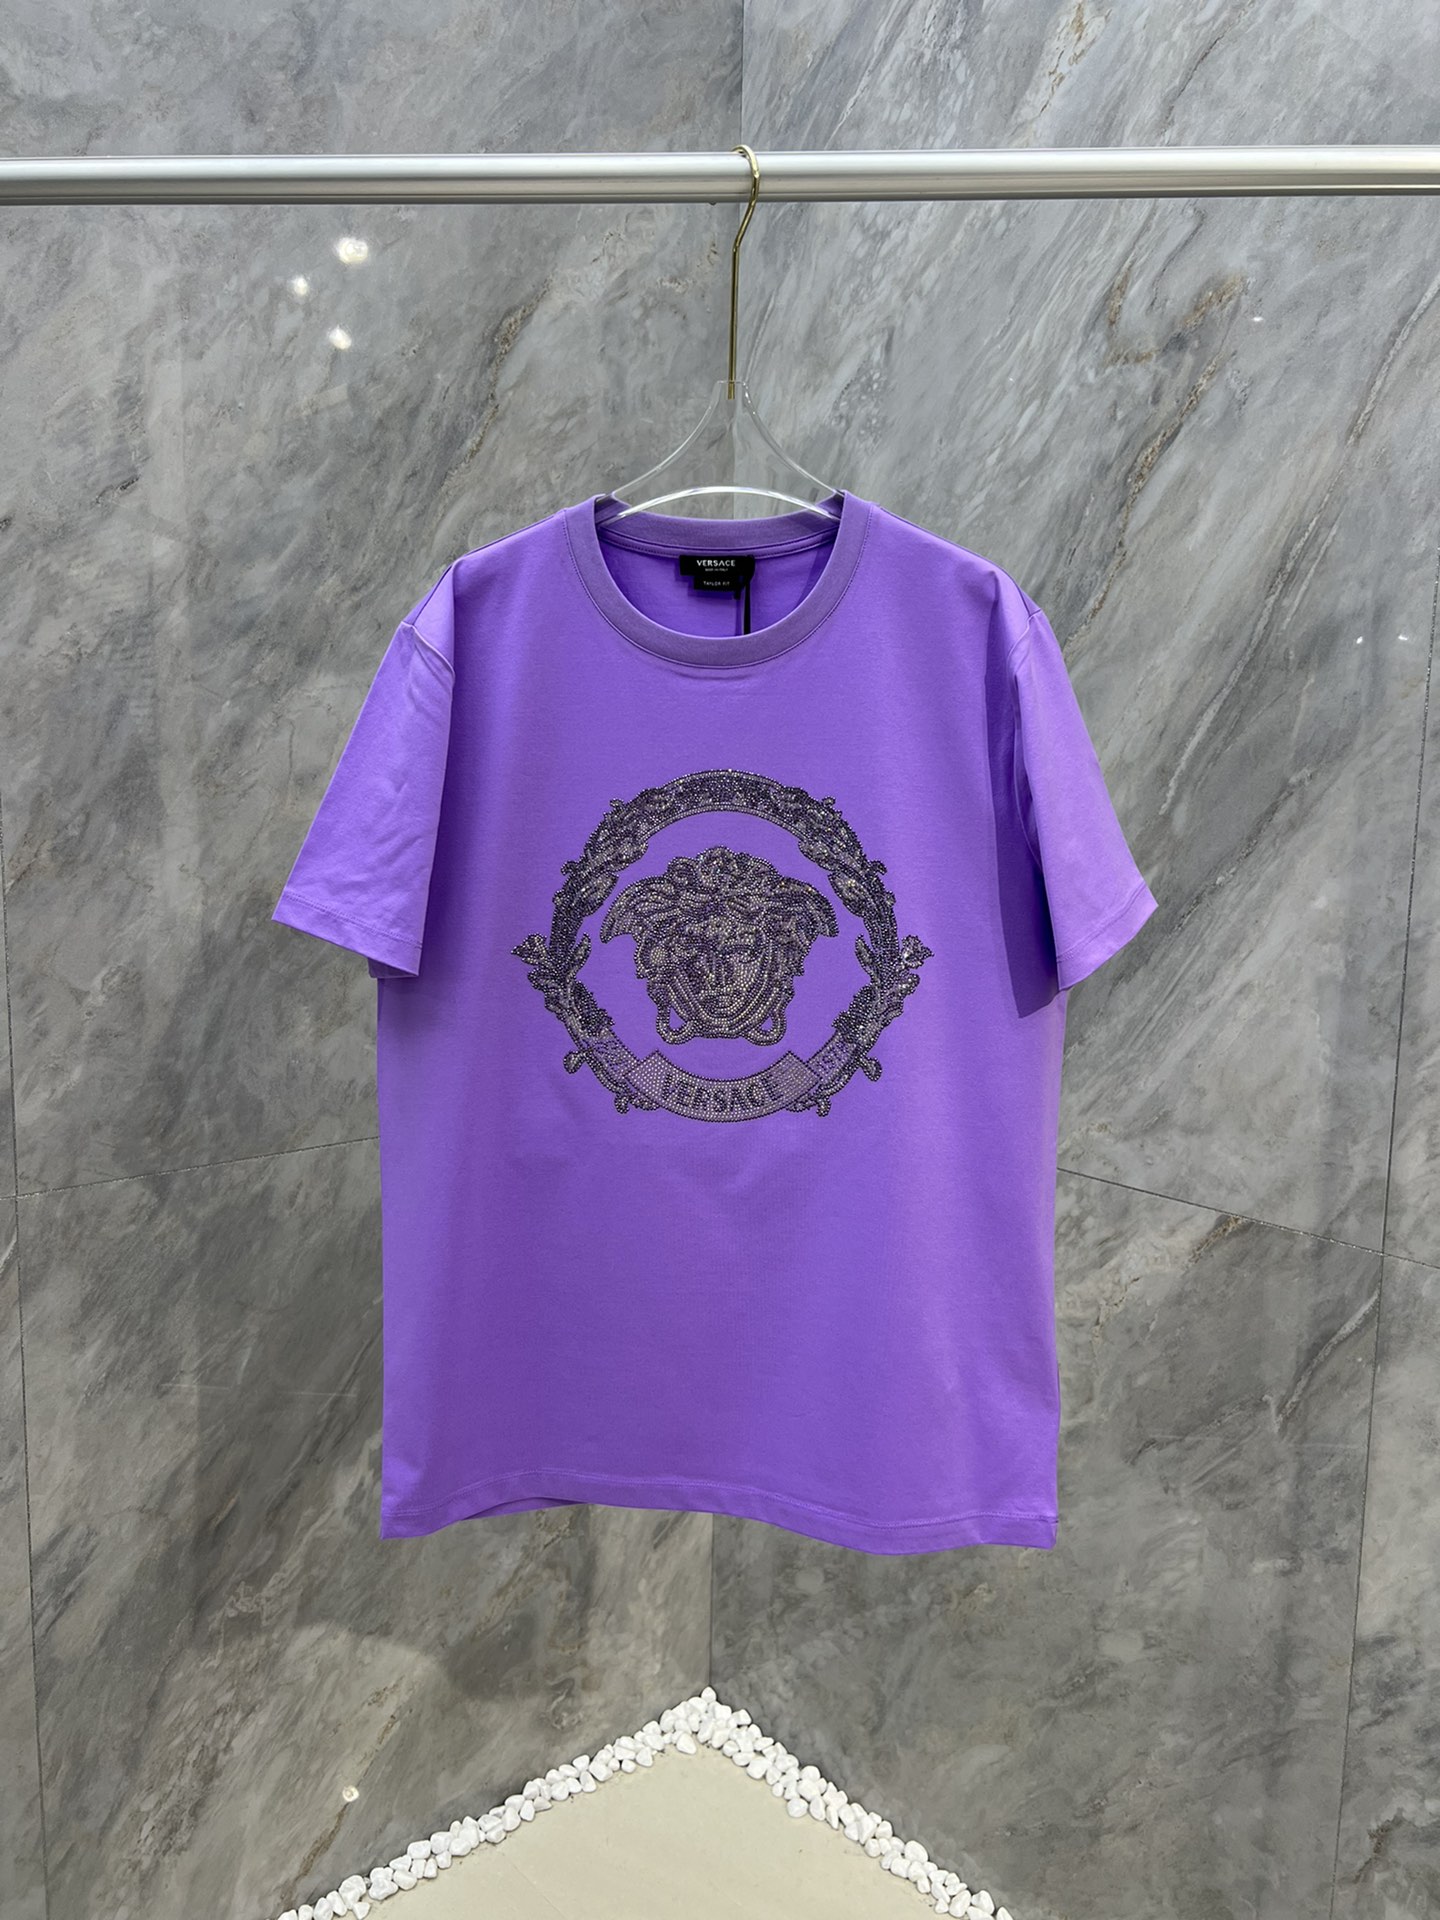 Versa*ce/24ss新品男士饰有水晶装饰Medusa和Barocco冠状花纹图案棉质平纹布短袖T恤